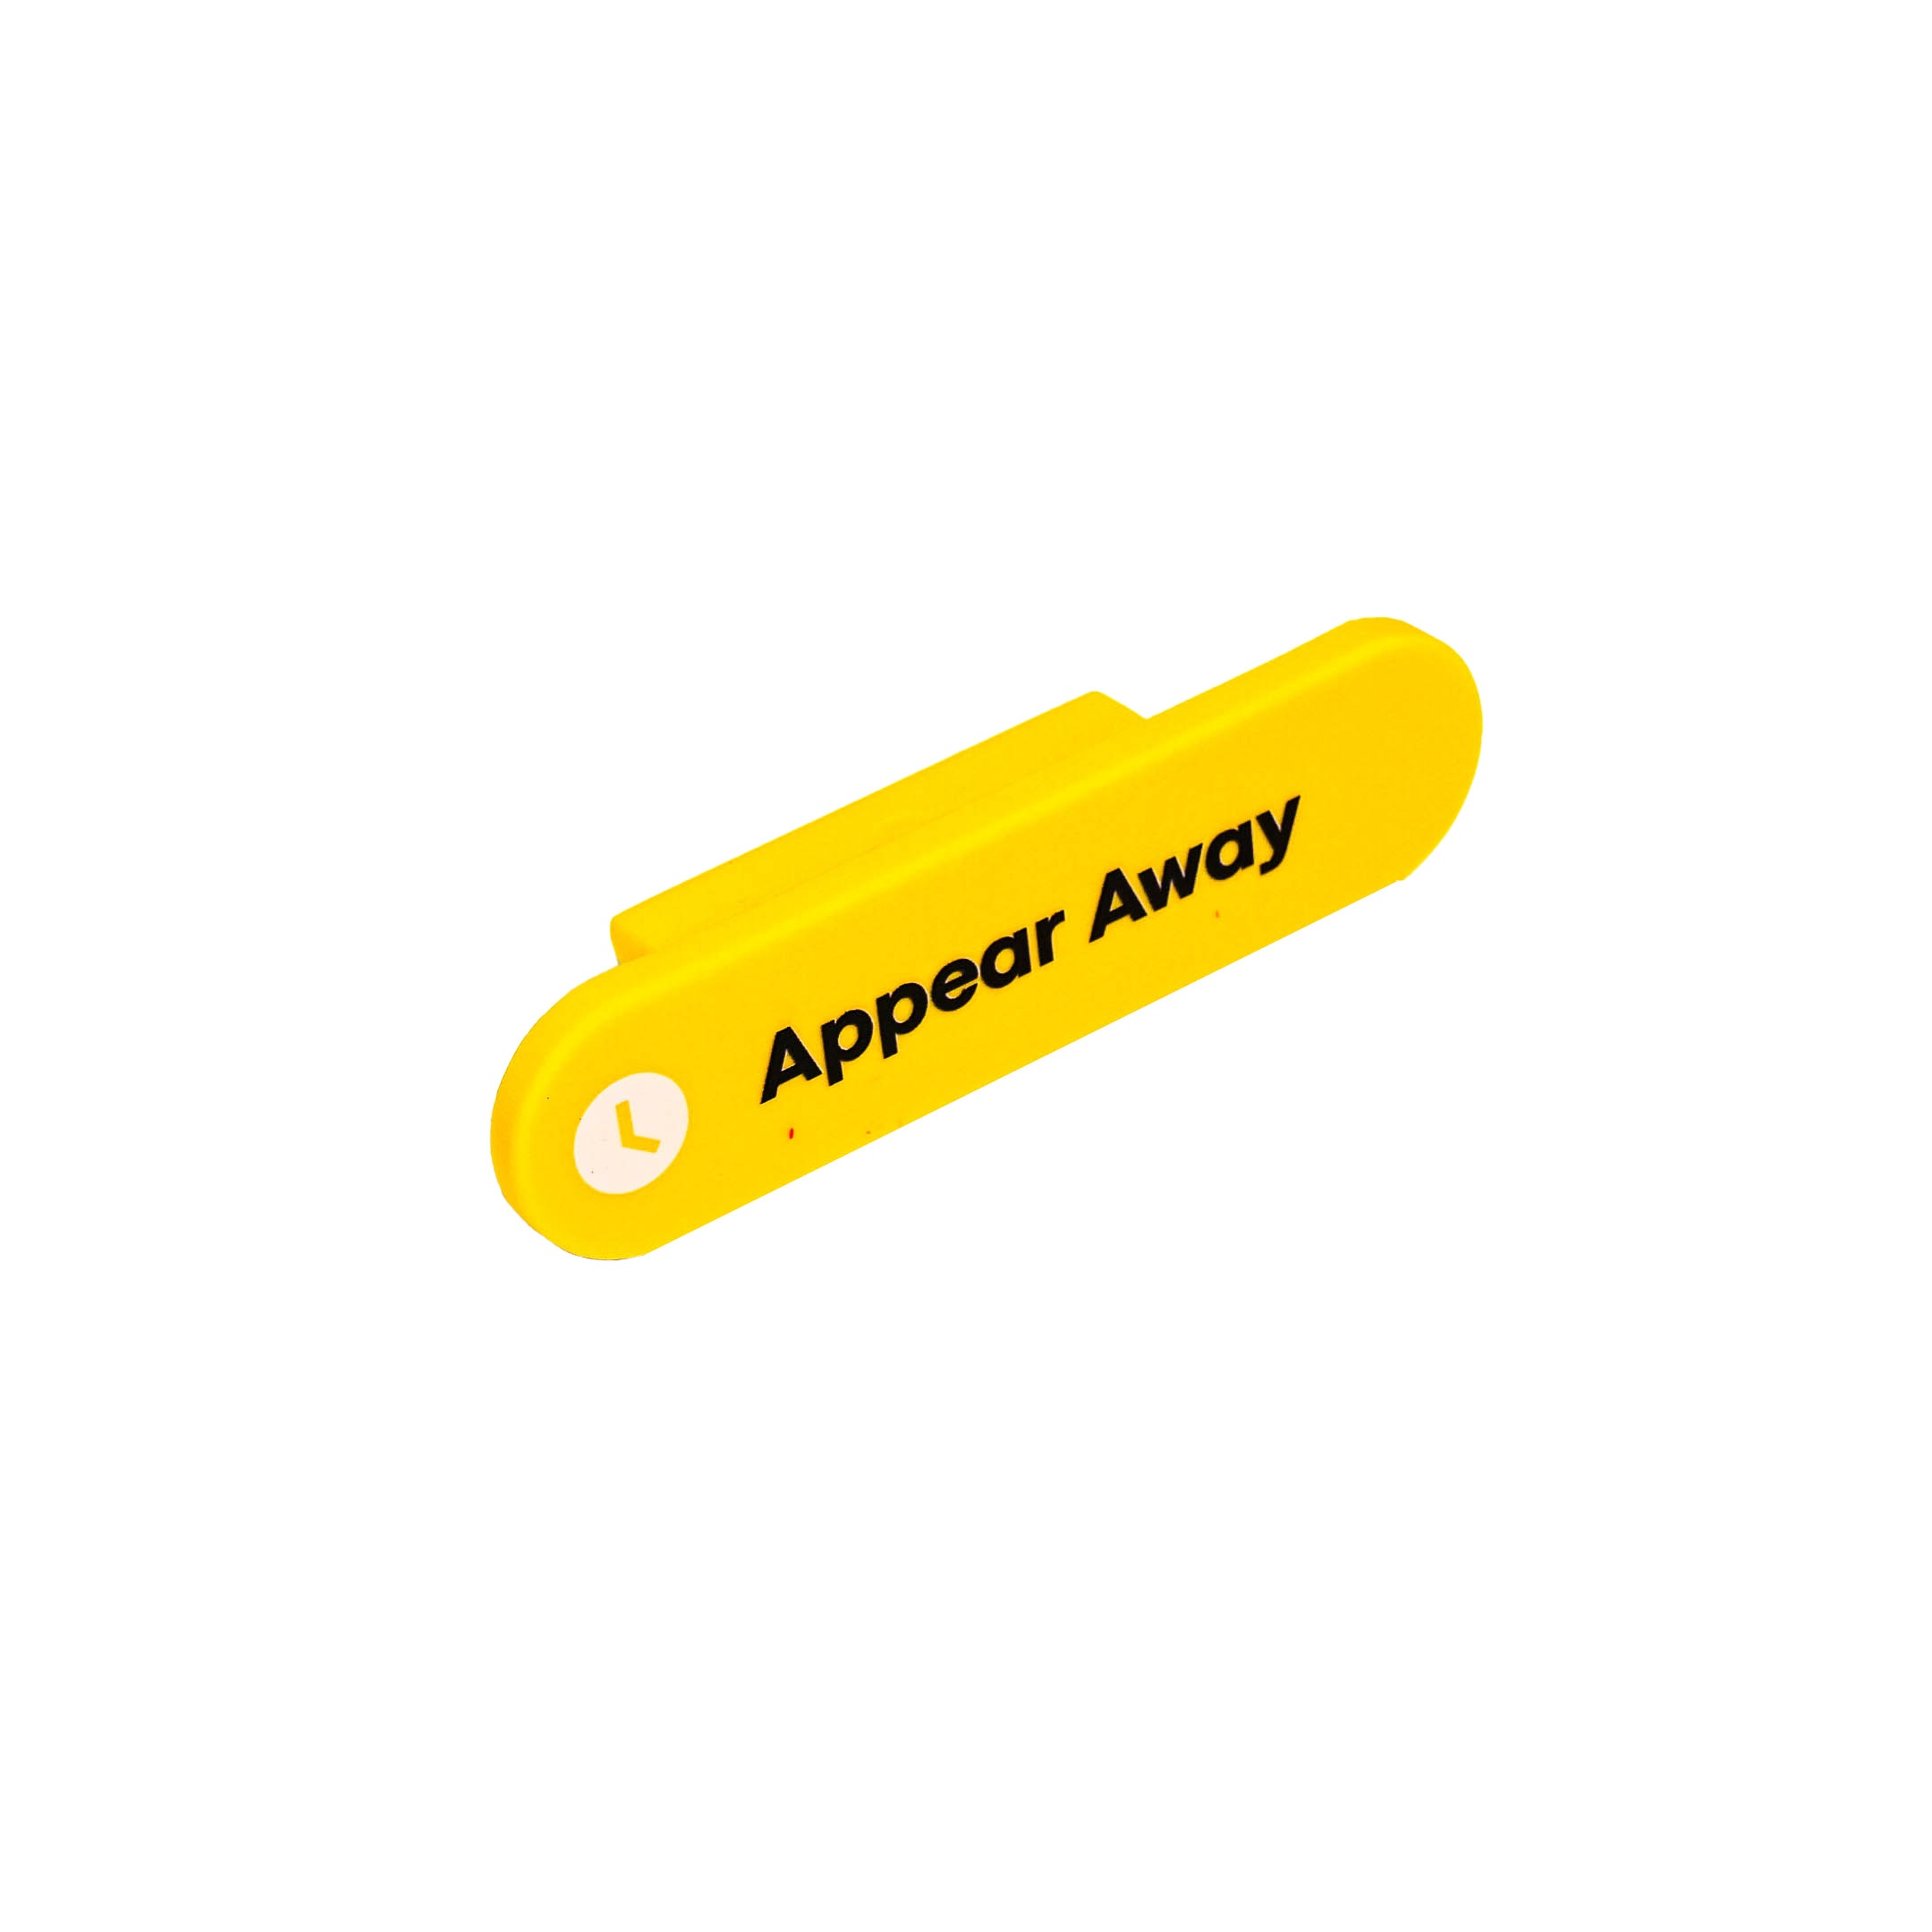 Appear Away